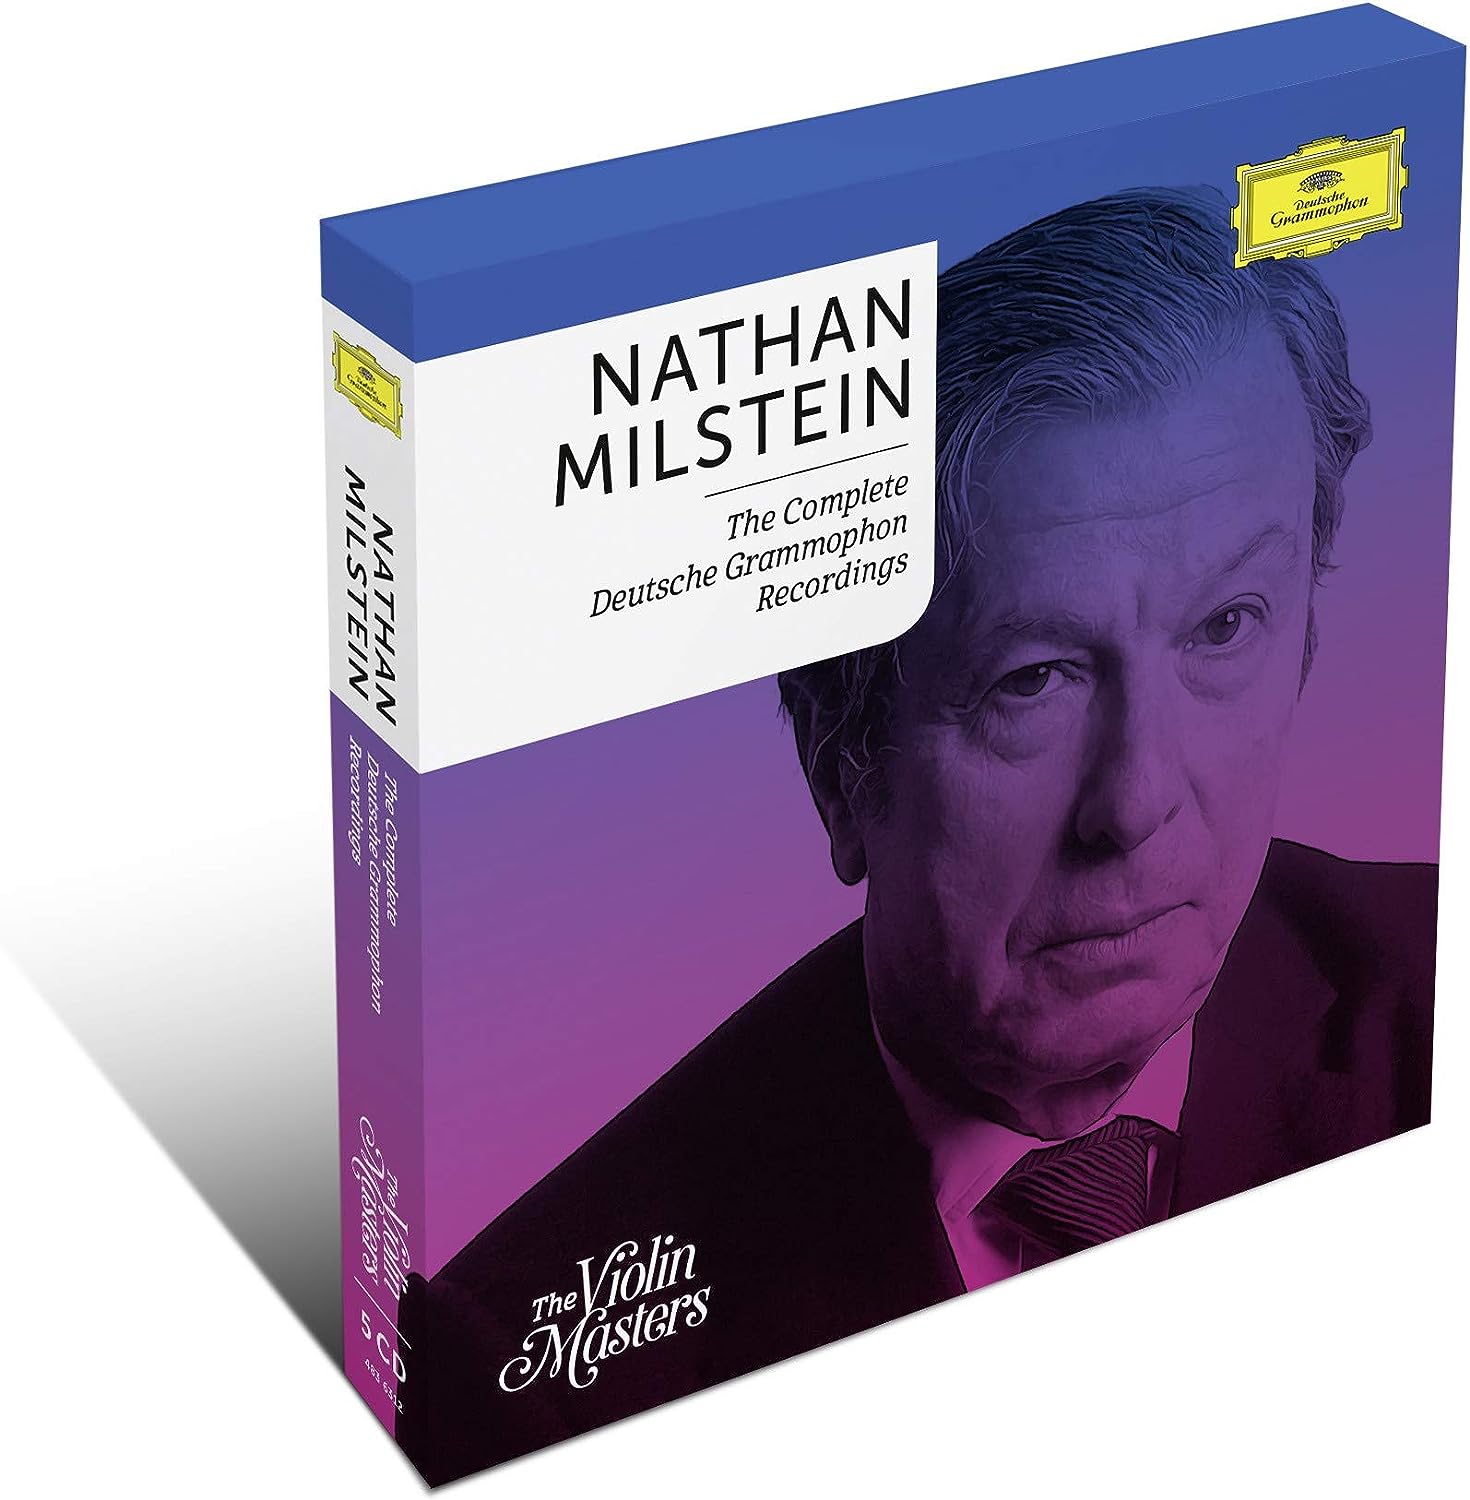 Nathan Milstein - The Complete Deutsche Grammophon Recordings (5CDs Box Set) | Nathan Milstein